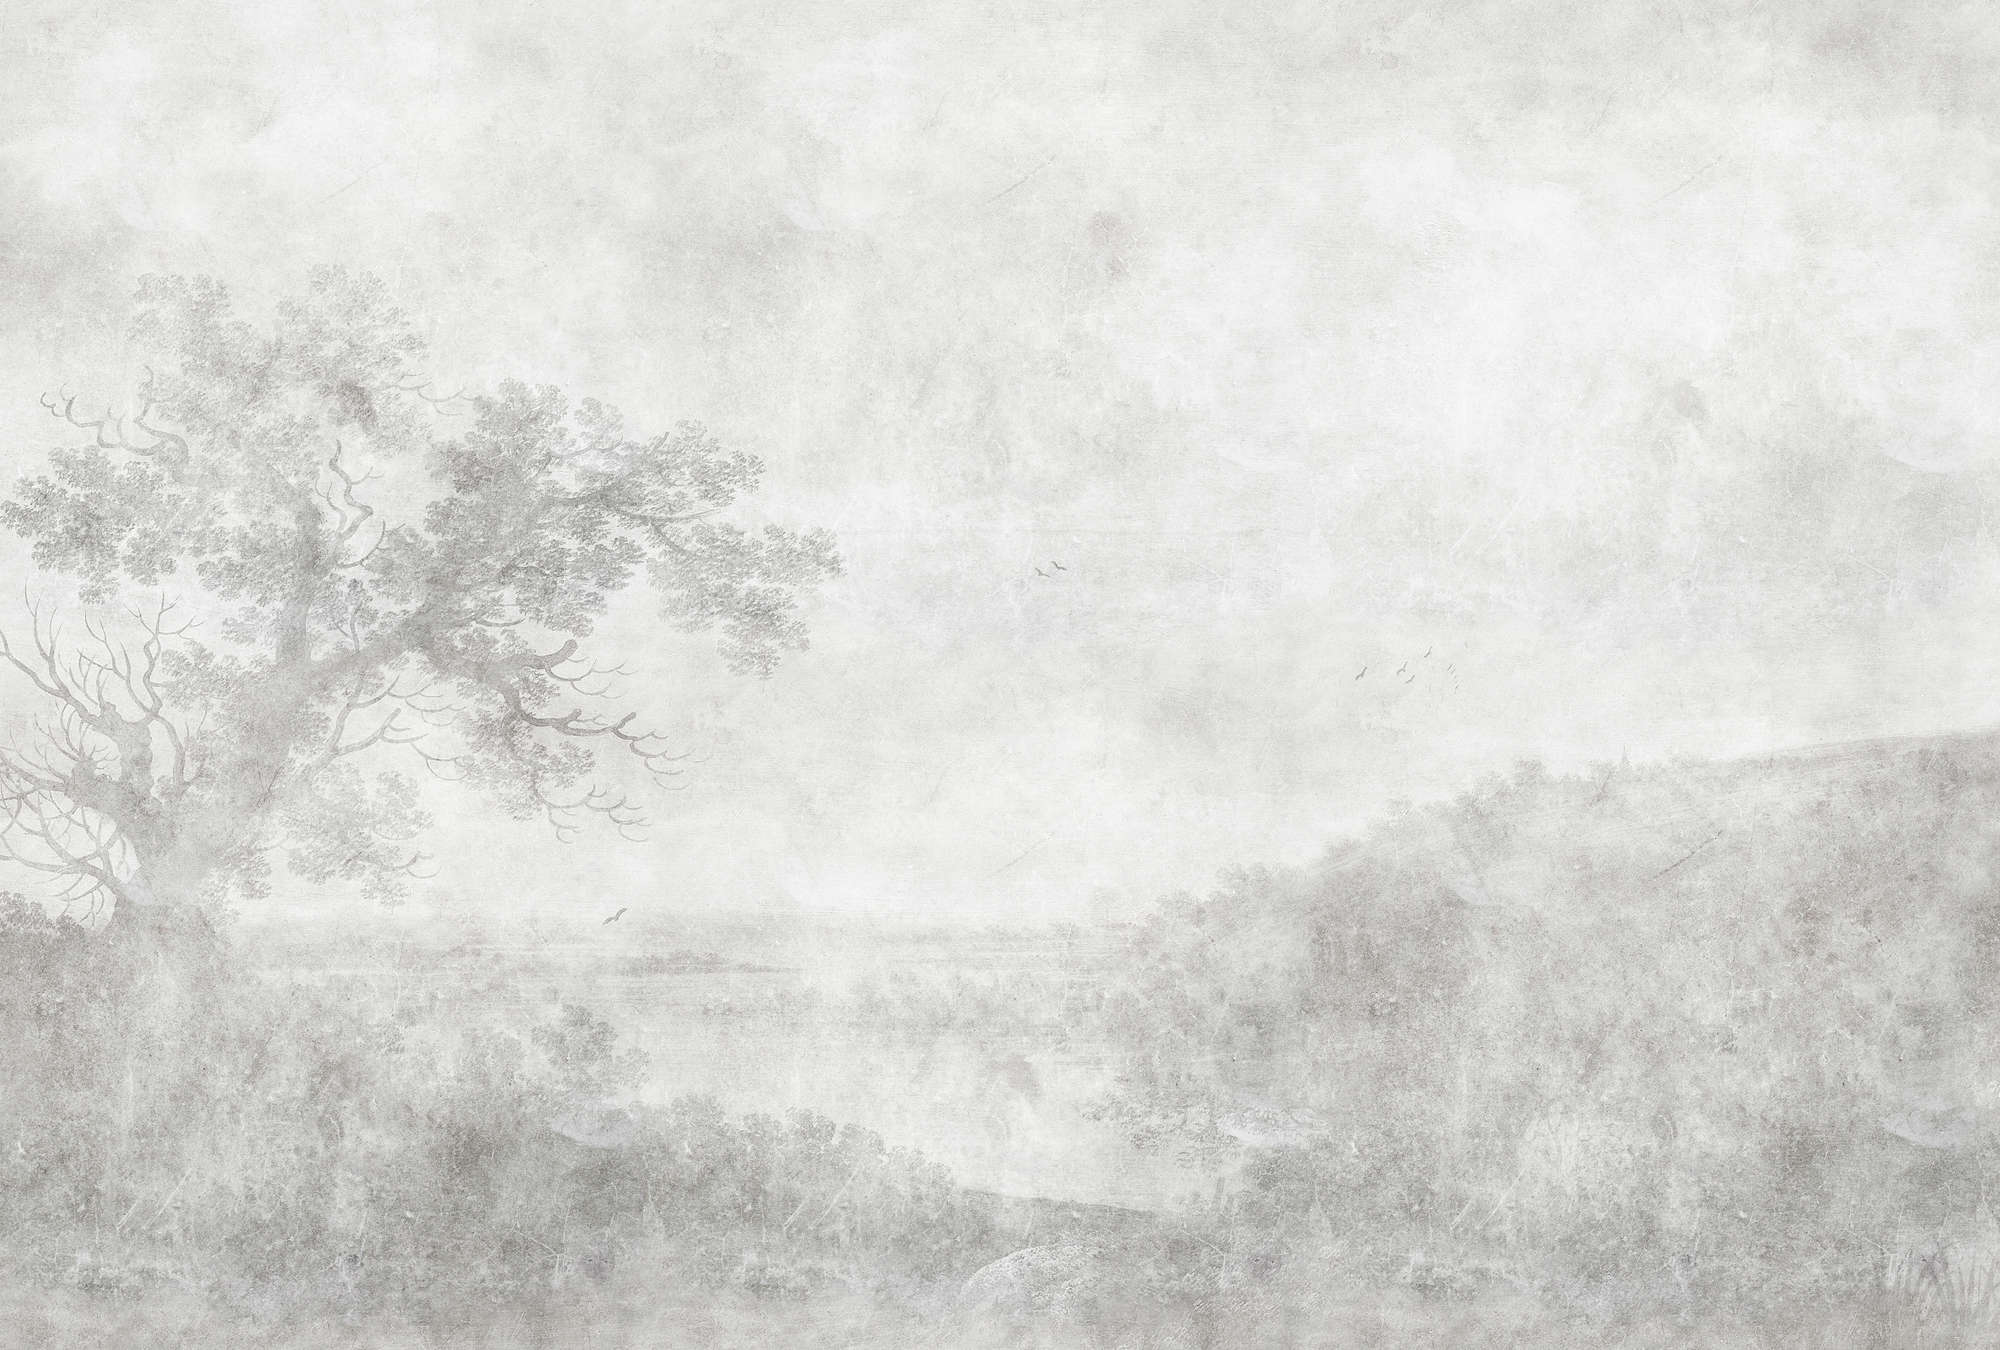             Romantic River 2 - papier peint vintage peinture noir et blanc
        